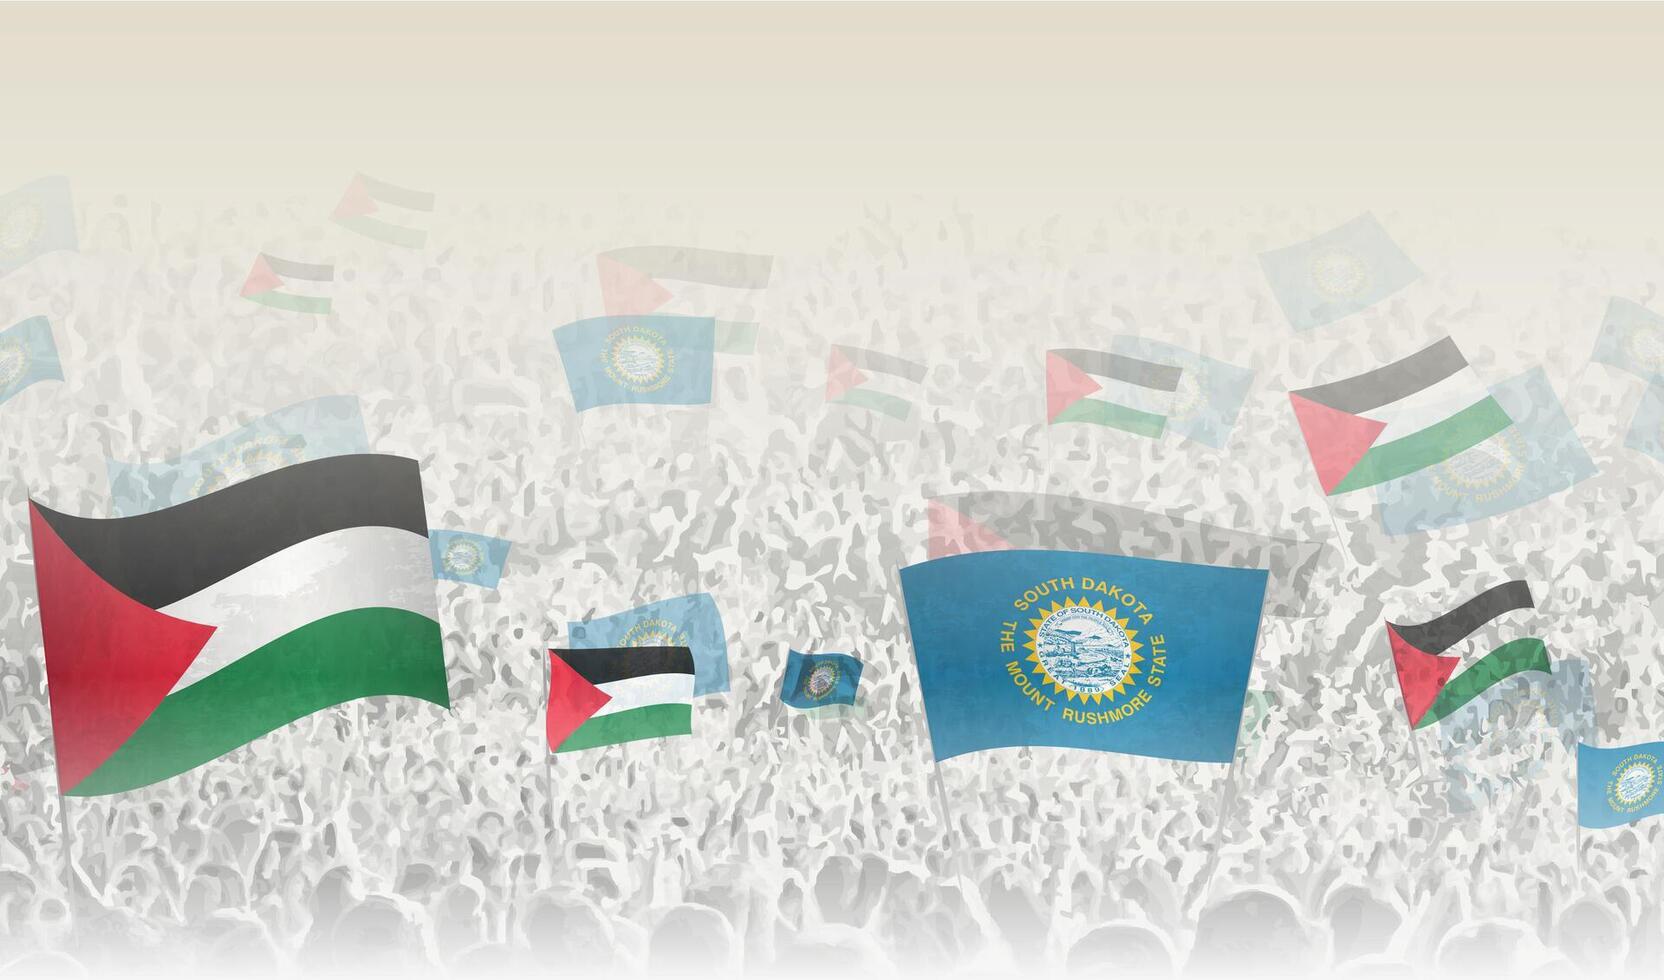 Palestine et Sud Dakota drapeaux dans une foule de applaudissement personnes. vecteur